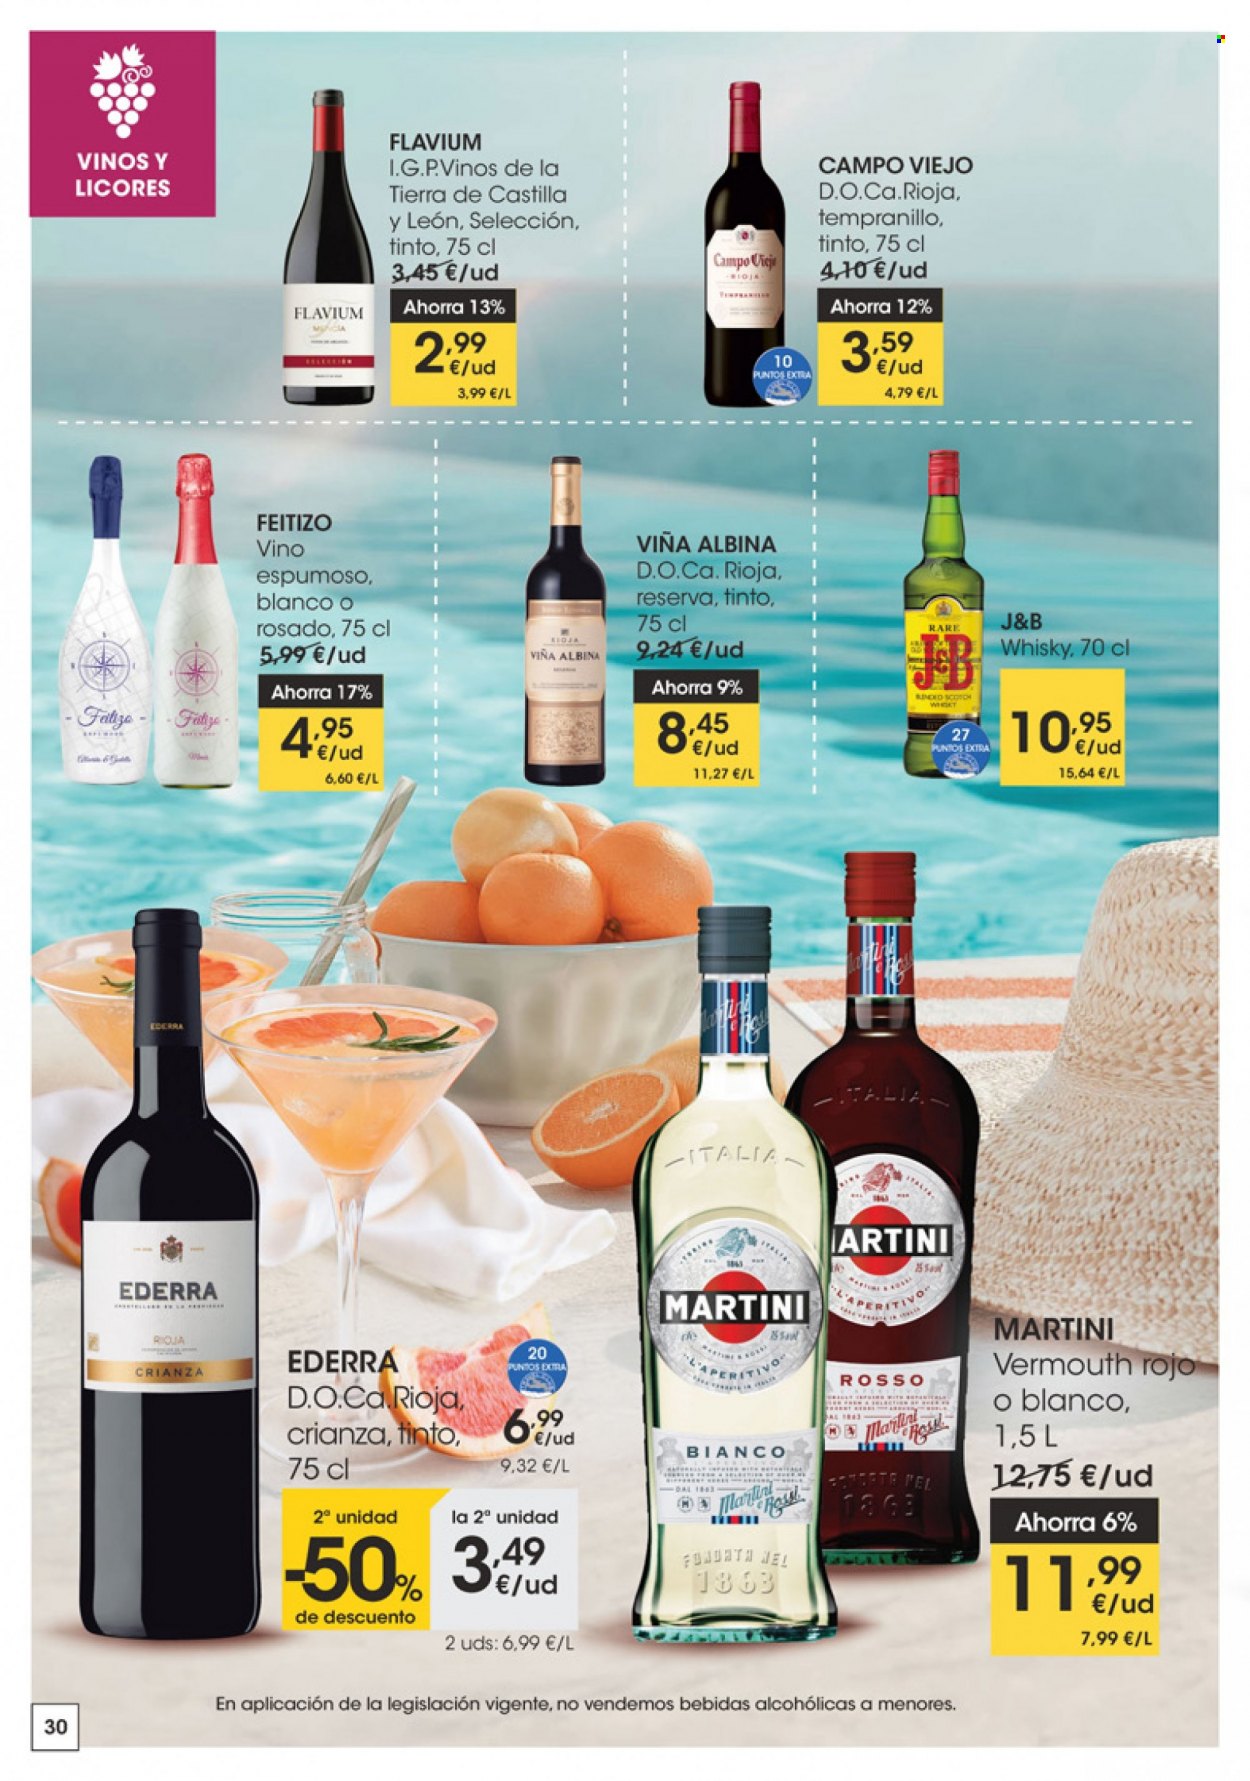 thumbnail - Folleto actual Eroski - 16/06/22 - 28/06/22 - Ventas - bebida, vino, vino espumoso, Rioja, Crianza, J&B, Martini, vermouth, whisky, bebida alcohólica. Página 30.